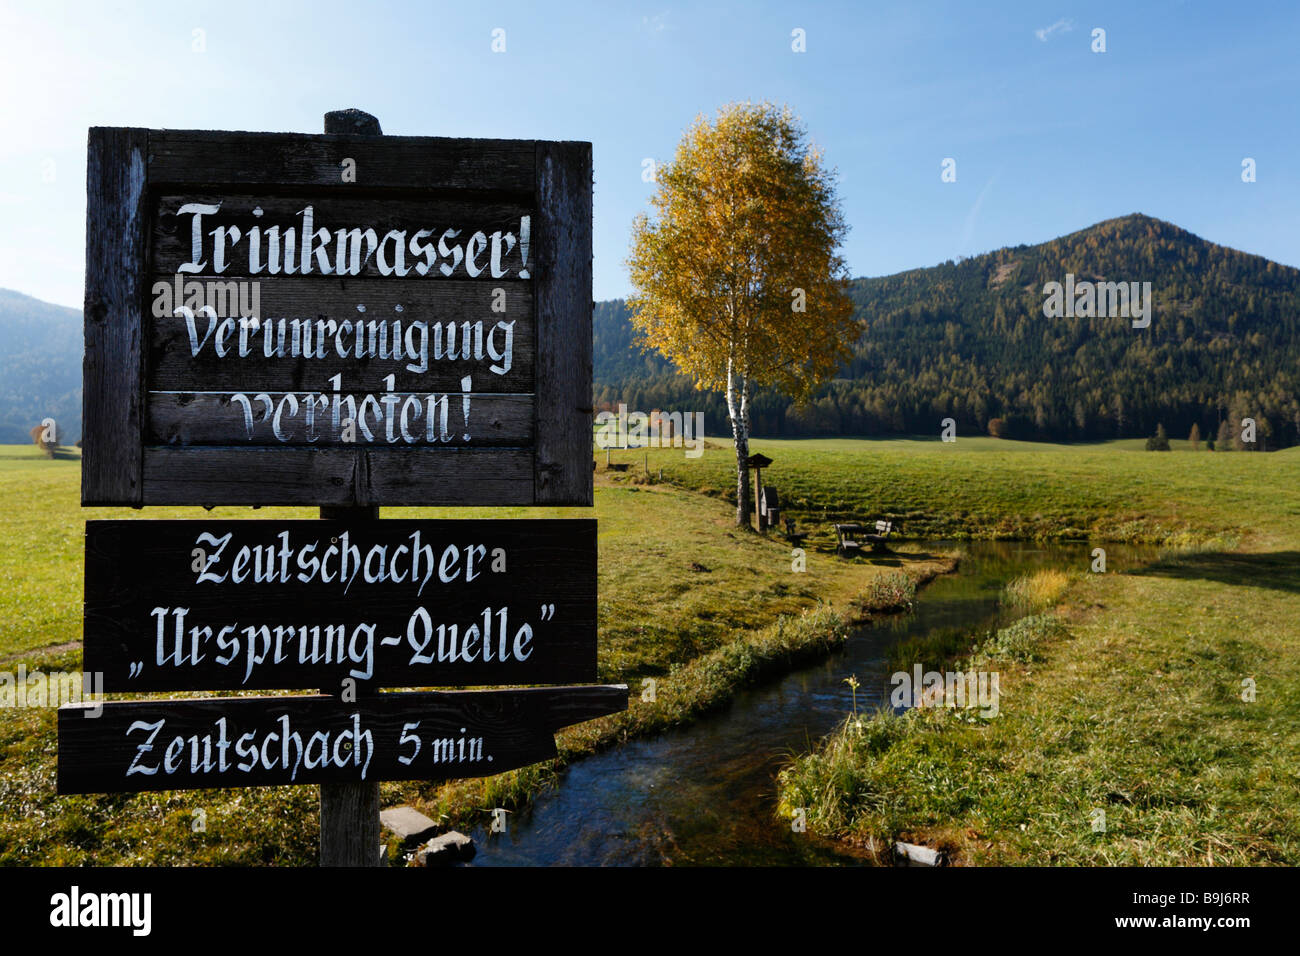 Zeutschacher Ursprungquelle, source of water, sign 'Trinkwasser! Verunreinigung verboten!', 'Drinking water! Contamination proh Stock Photo